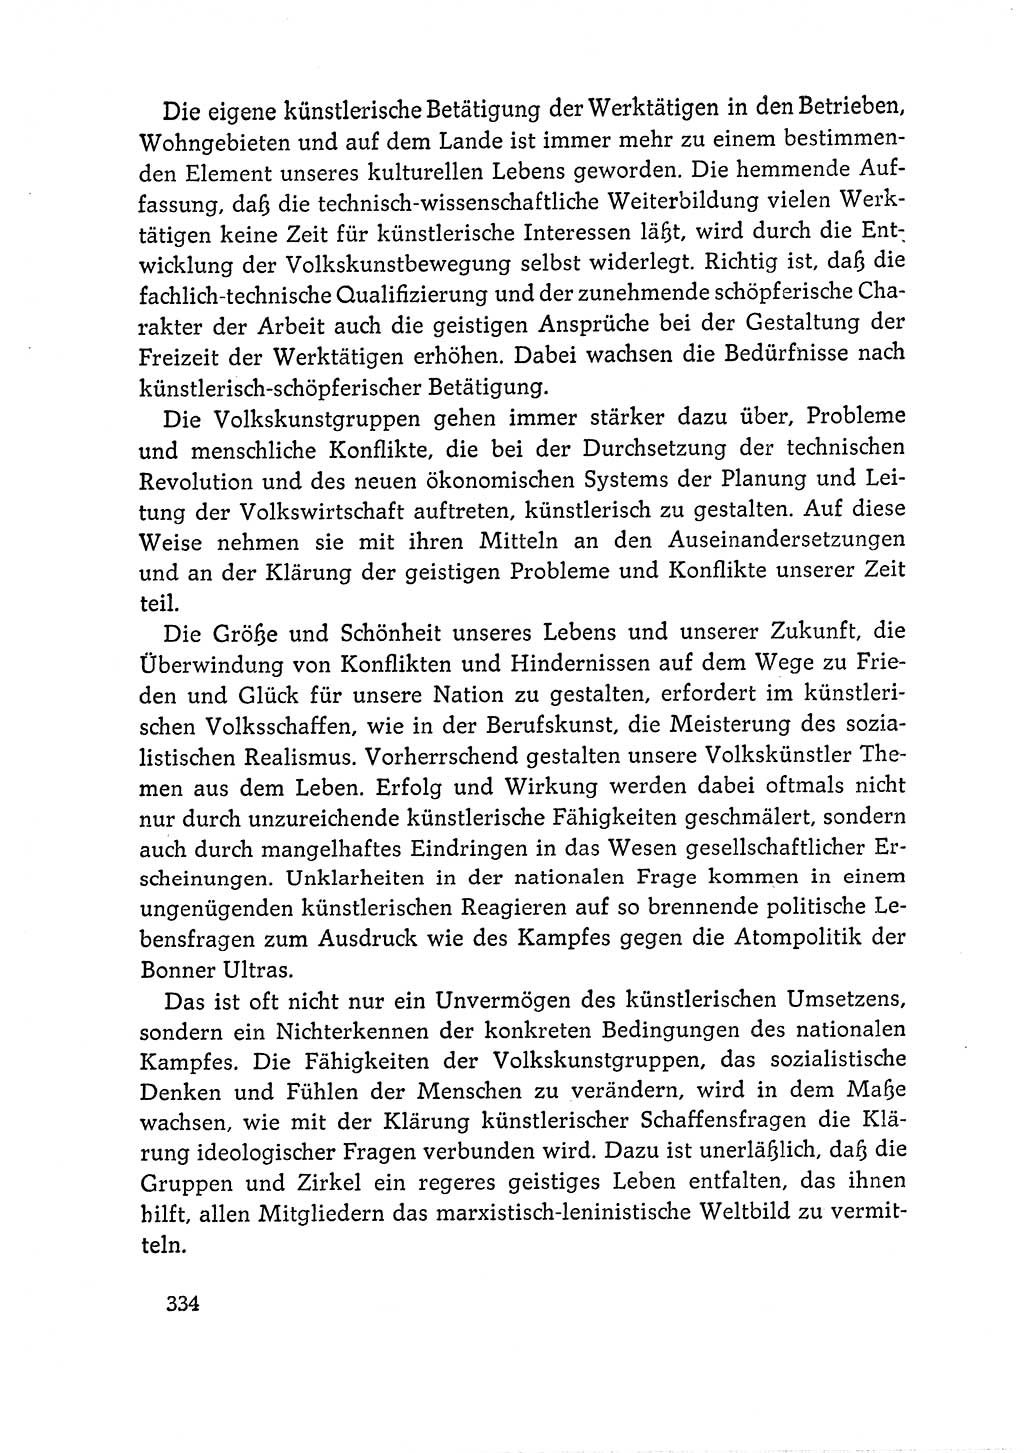 Dokumente der Sozialistischen Einheitspartei Deutschlands (SED) [Deutsche Demokratische Republik (DDR)] 1964-1965, Seite 334 (Dok. SED DDR 1964-1965, S. 334)